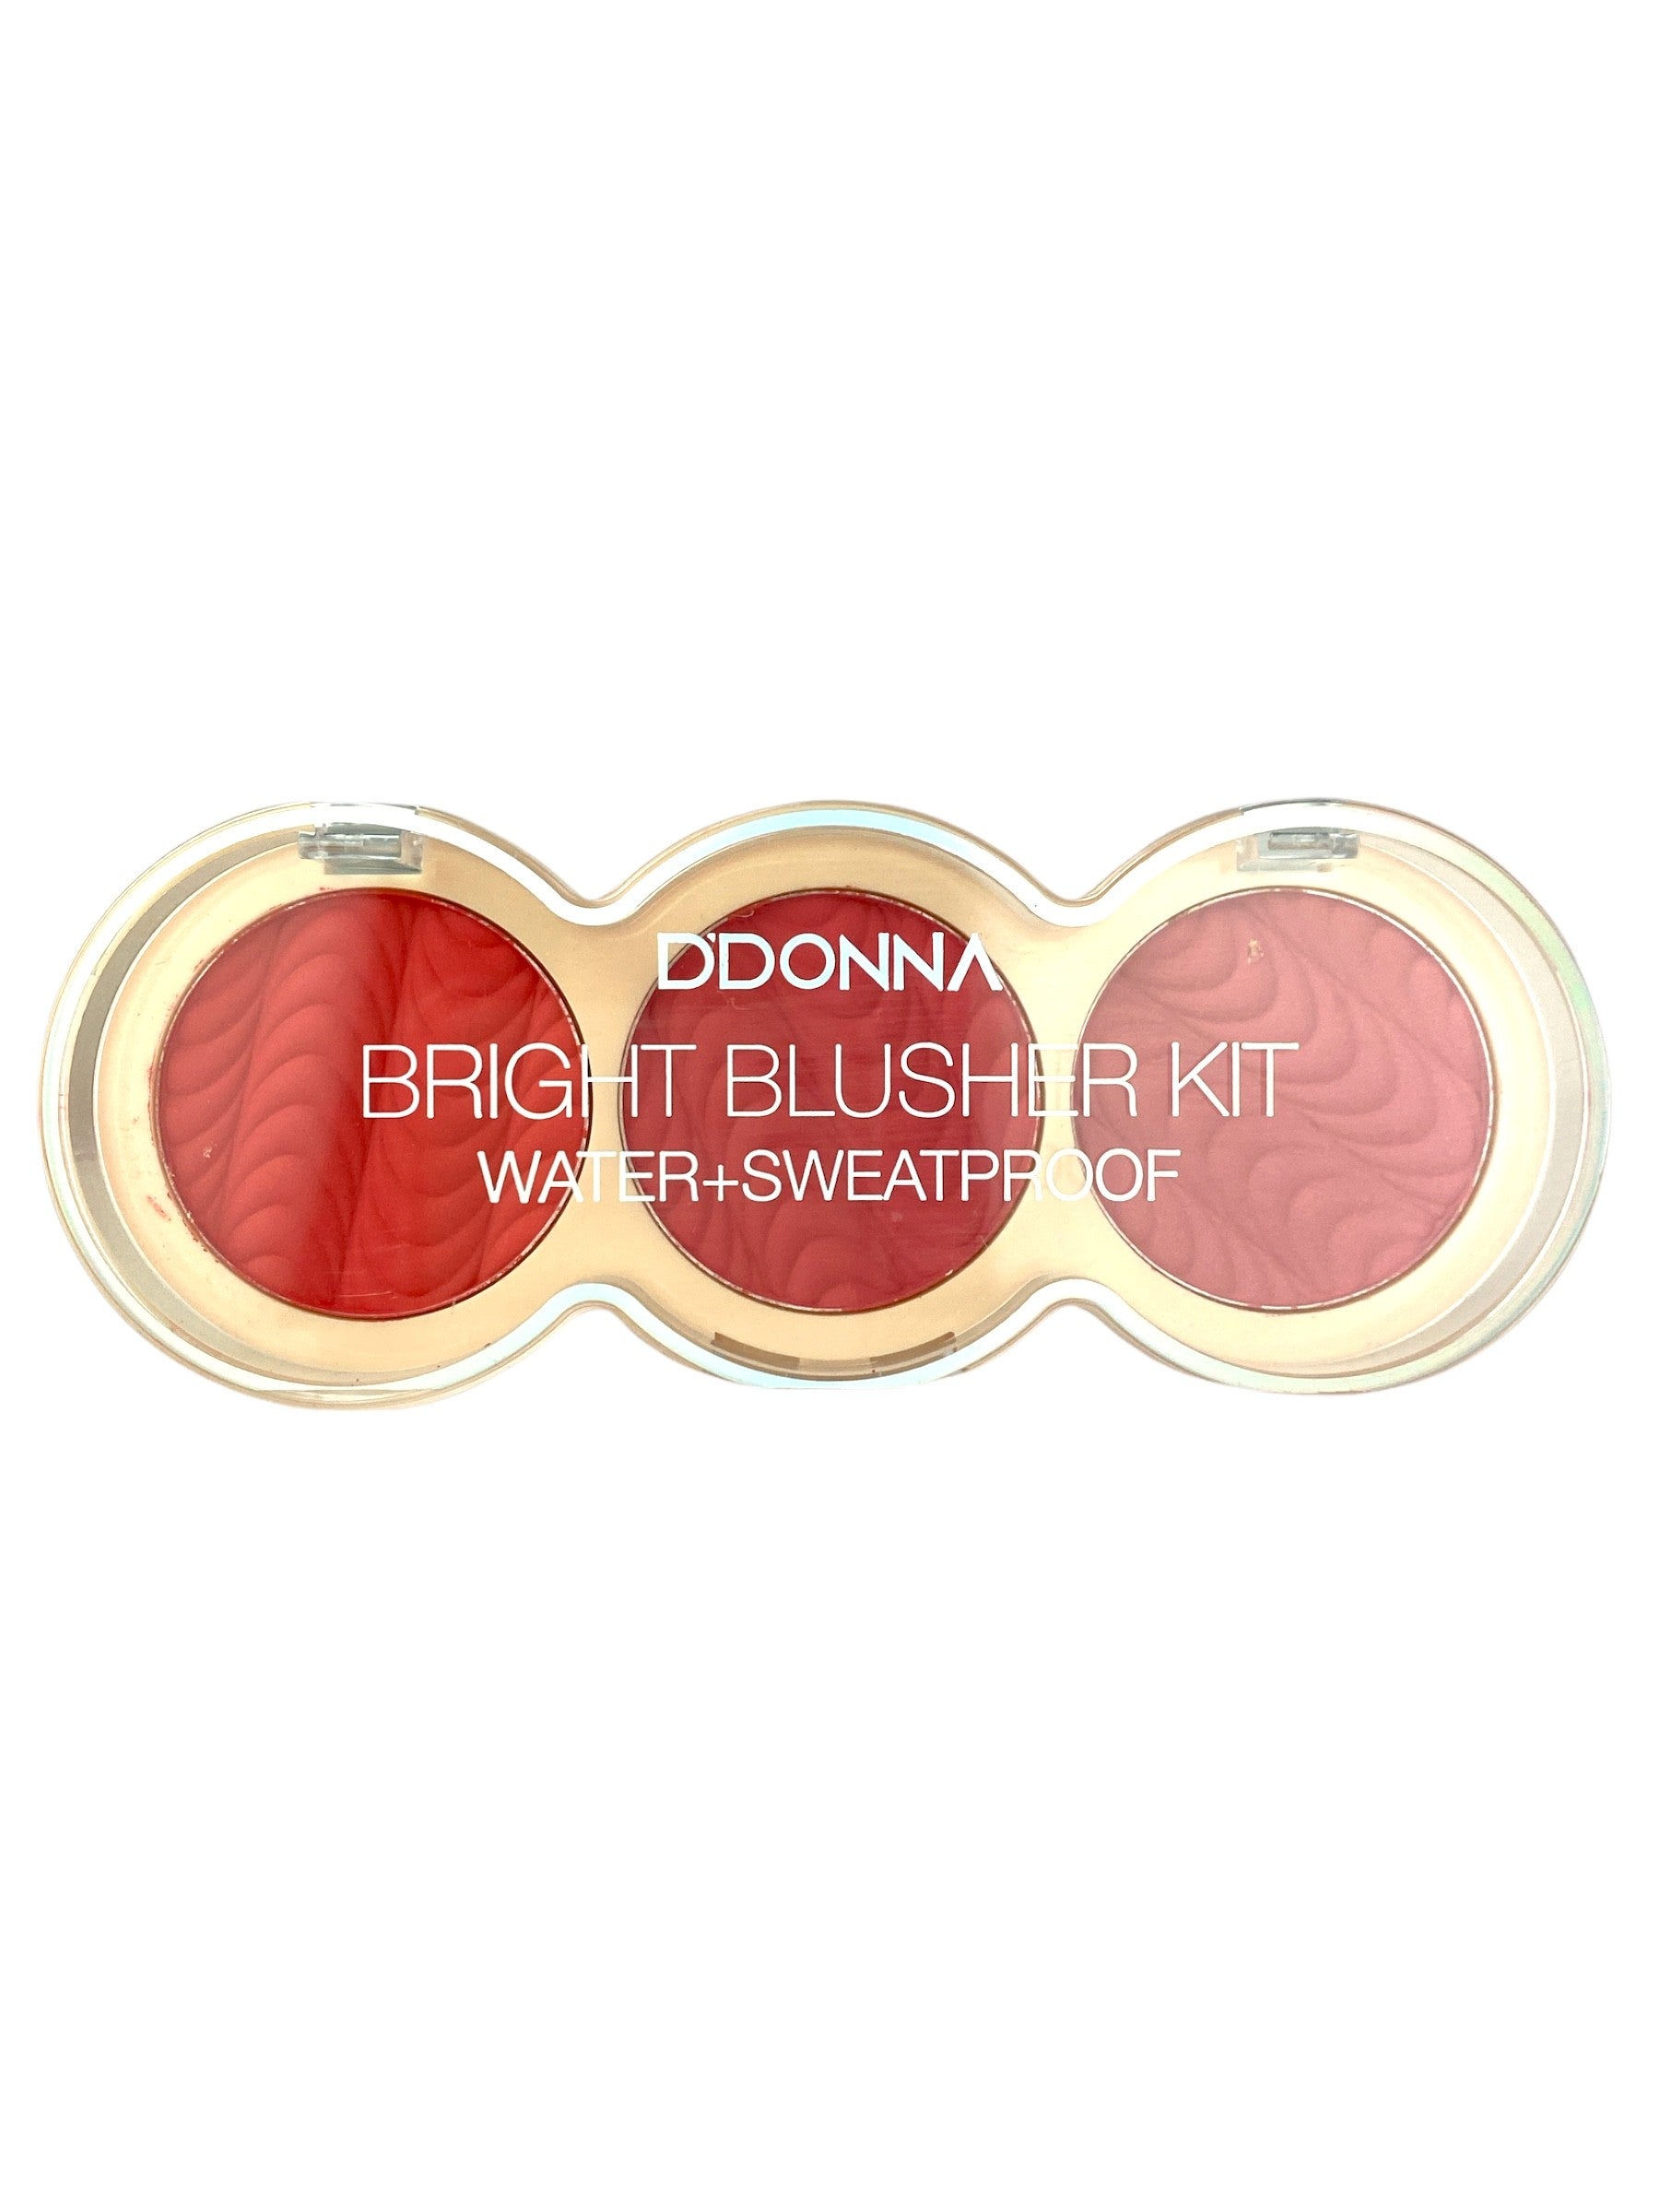 Kit de coloretes compactos "Bright blusher kit" Nº 3 - D'Donna